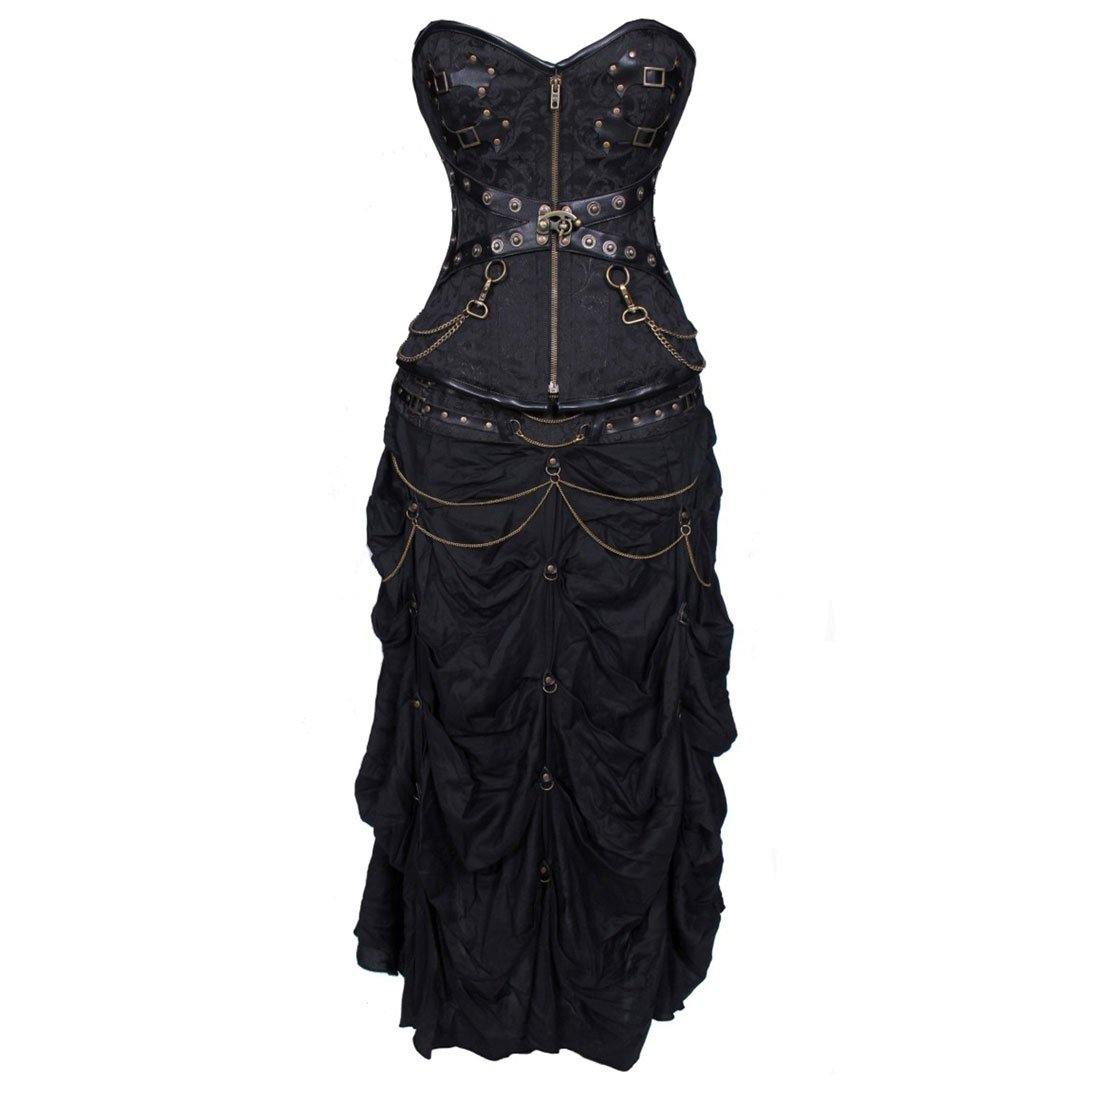 Kachina Geared Gothic Overbust Corset Dress - Corset Revolution